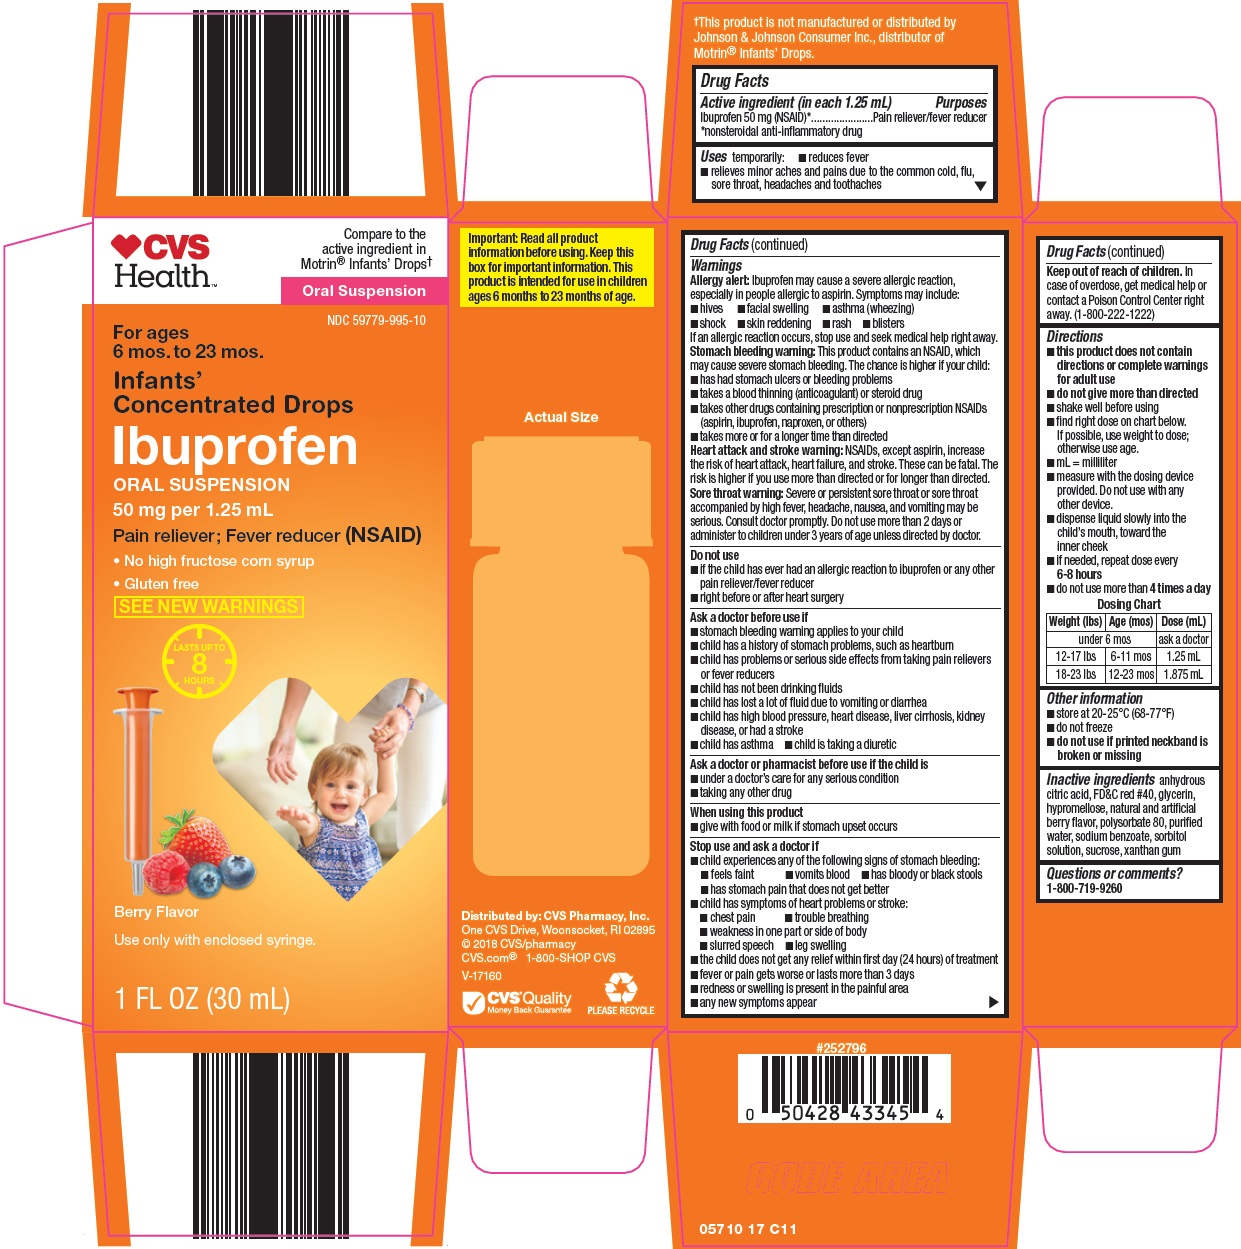 057-17-ibuprofen.jpg